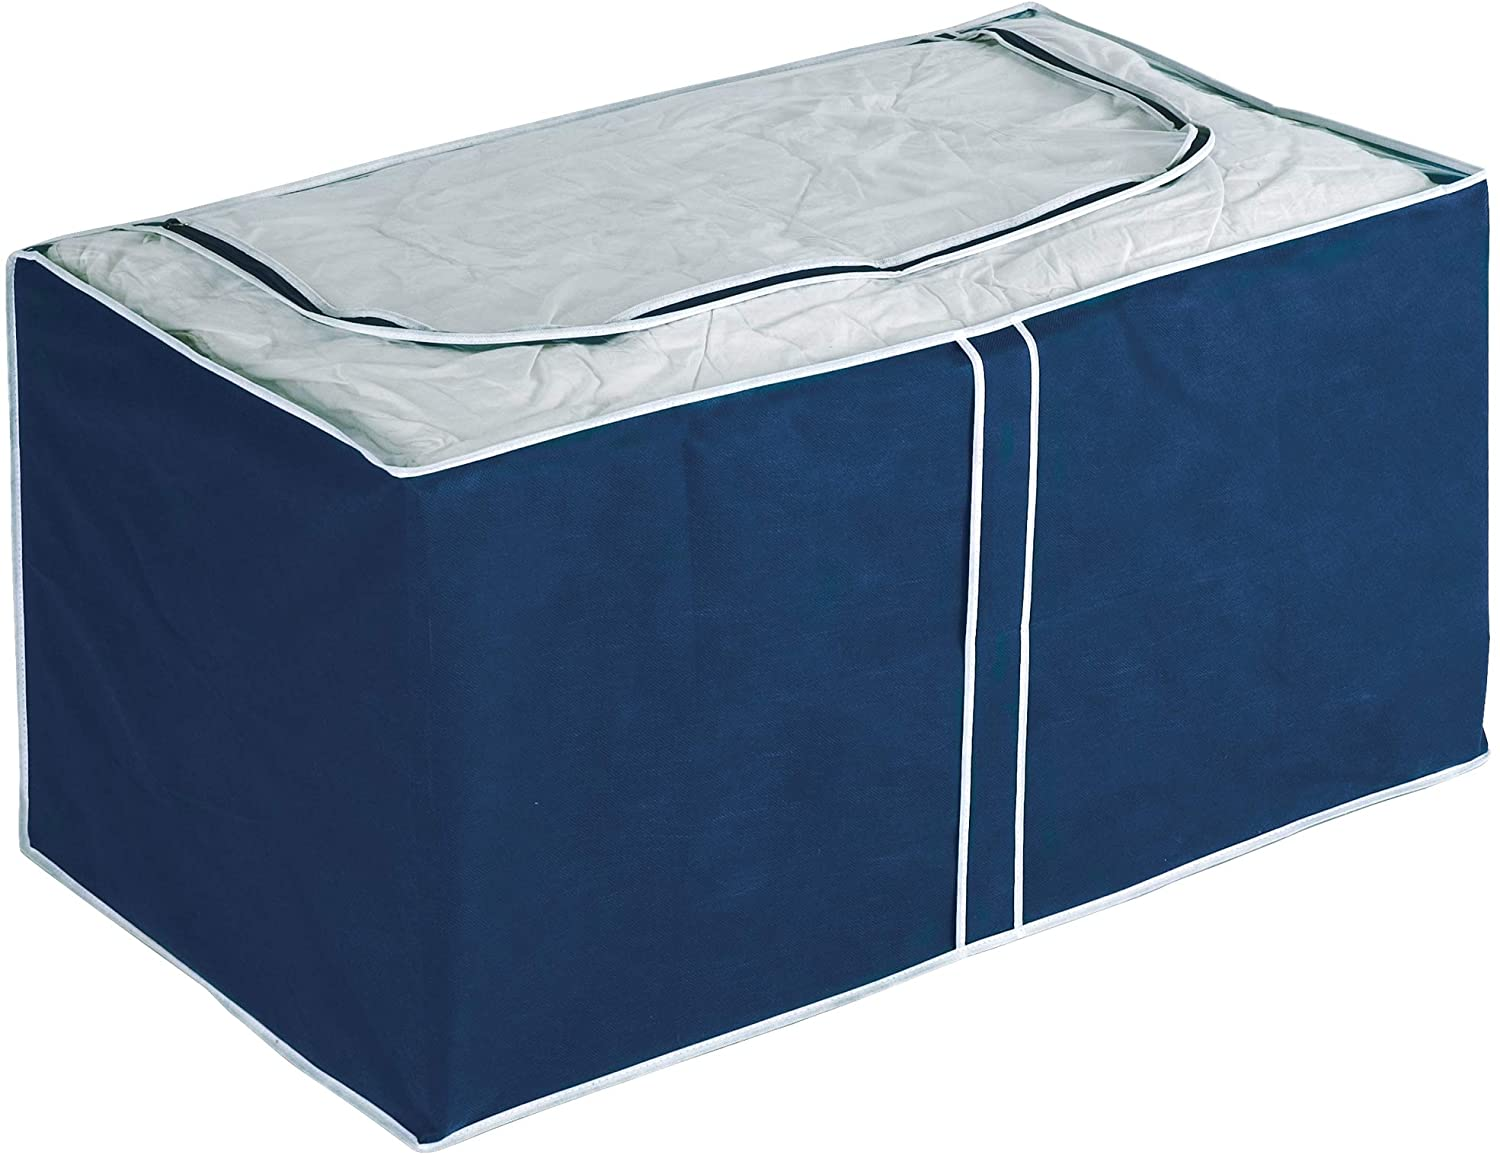 Jumbo-Box Air, Aufbewahrungsbox für Textilien, mit Sichtfenster und 3-Seiten-Reißverschluss, schützt vor Motten, Staub und Schmutz, aus atmungsaktivem Vlies-Material, 91 x 48 x 53 cm, Navy